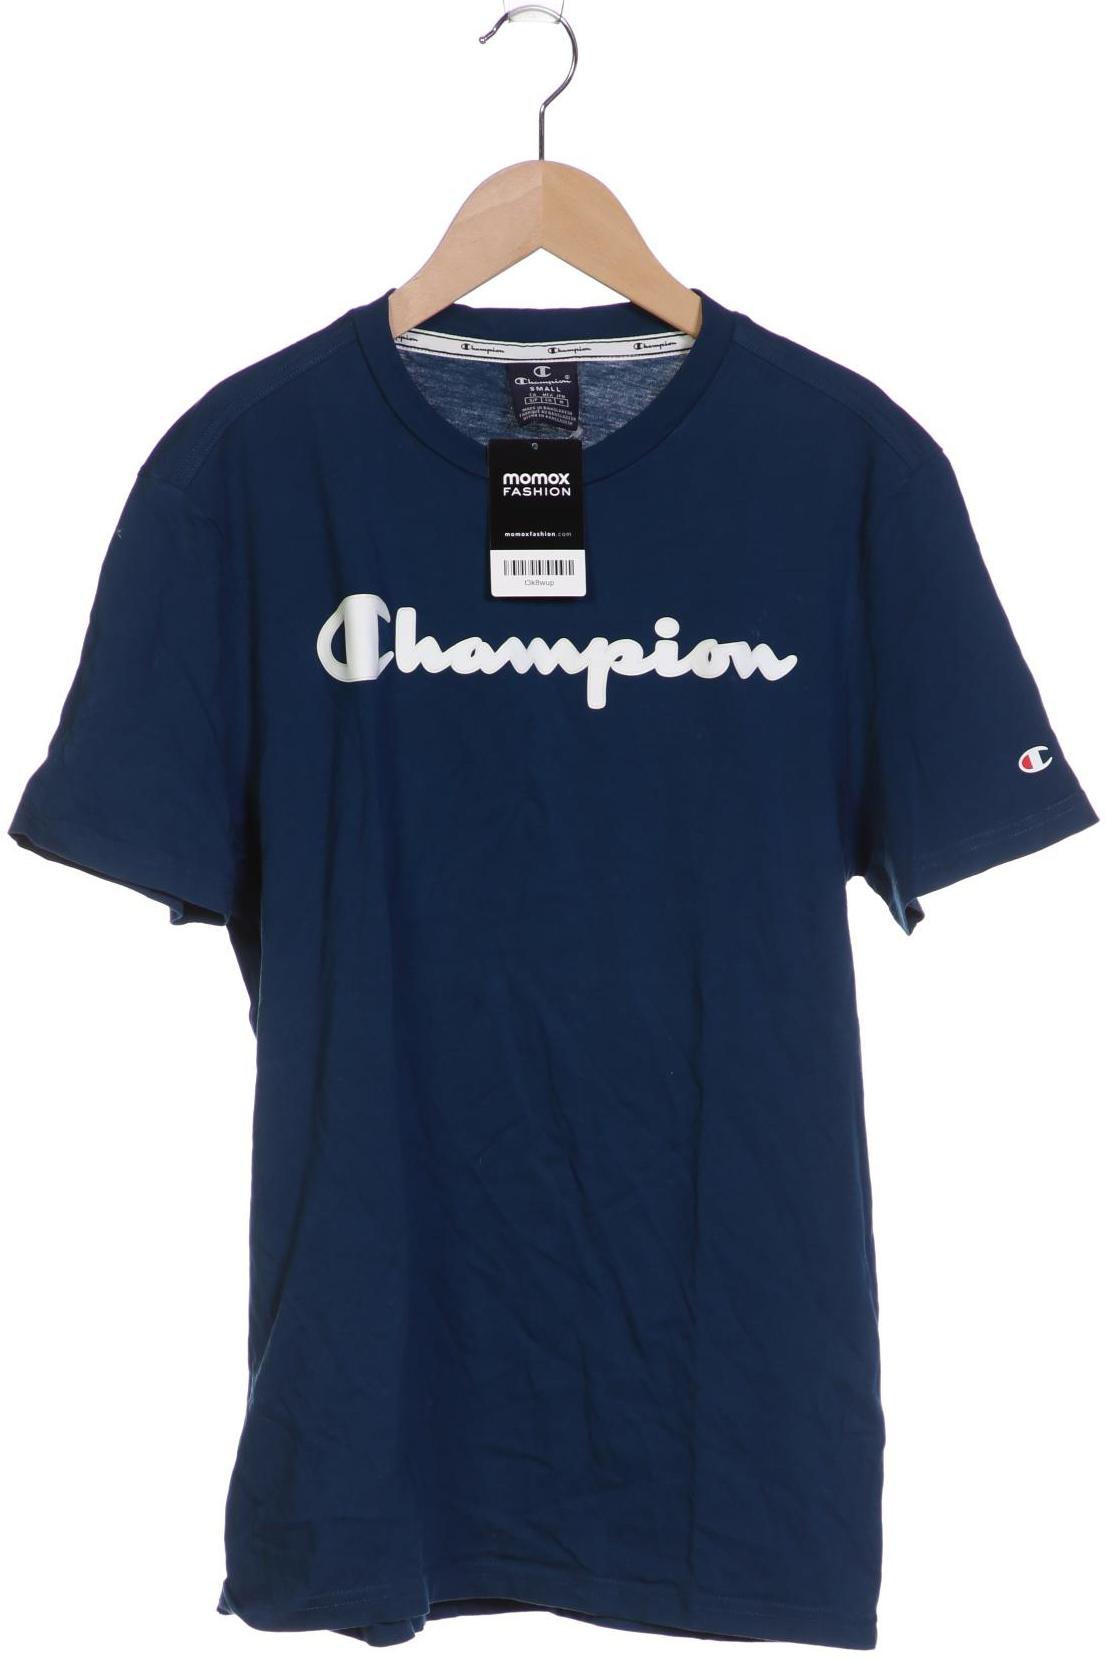 Champion Herren T-Shirt, marineblau von Champion